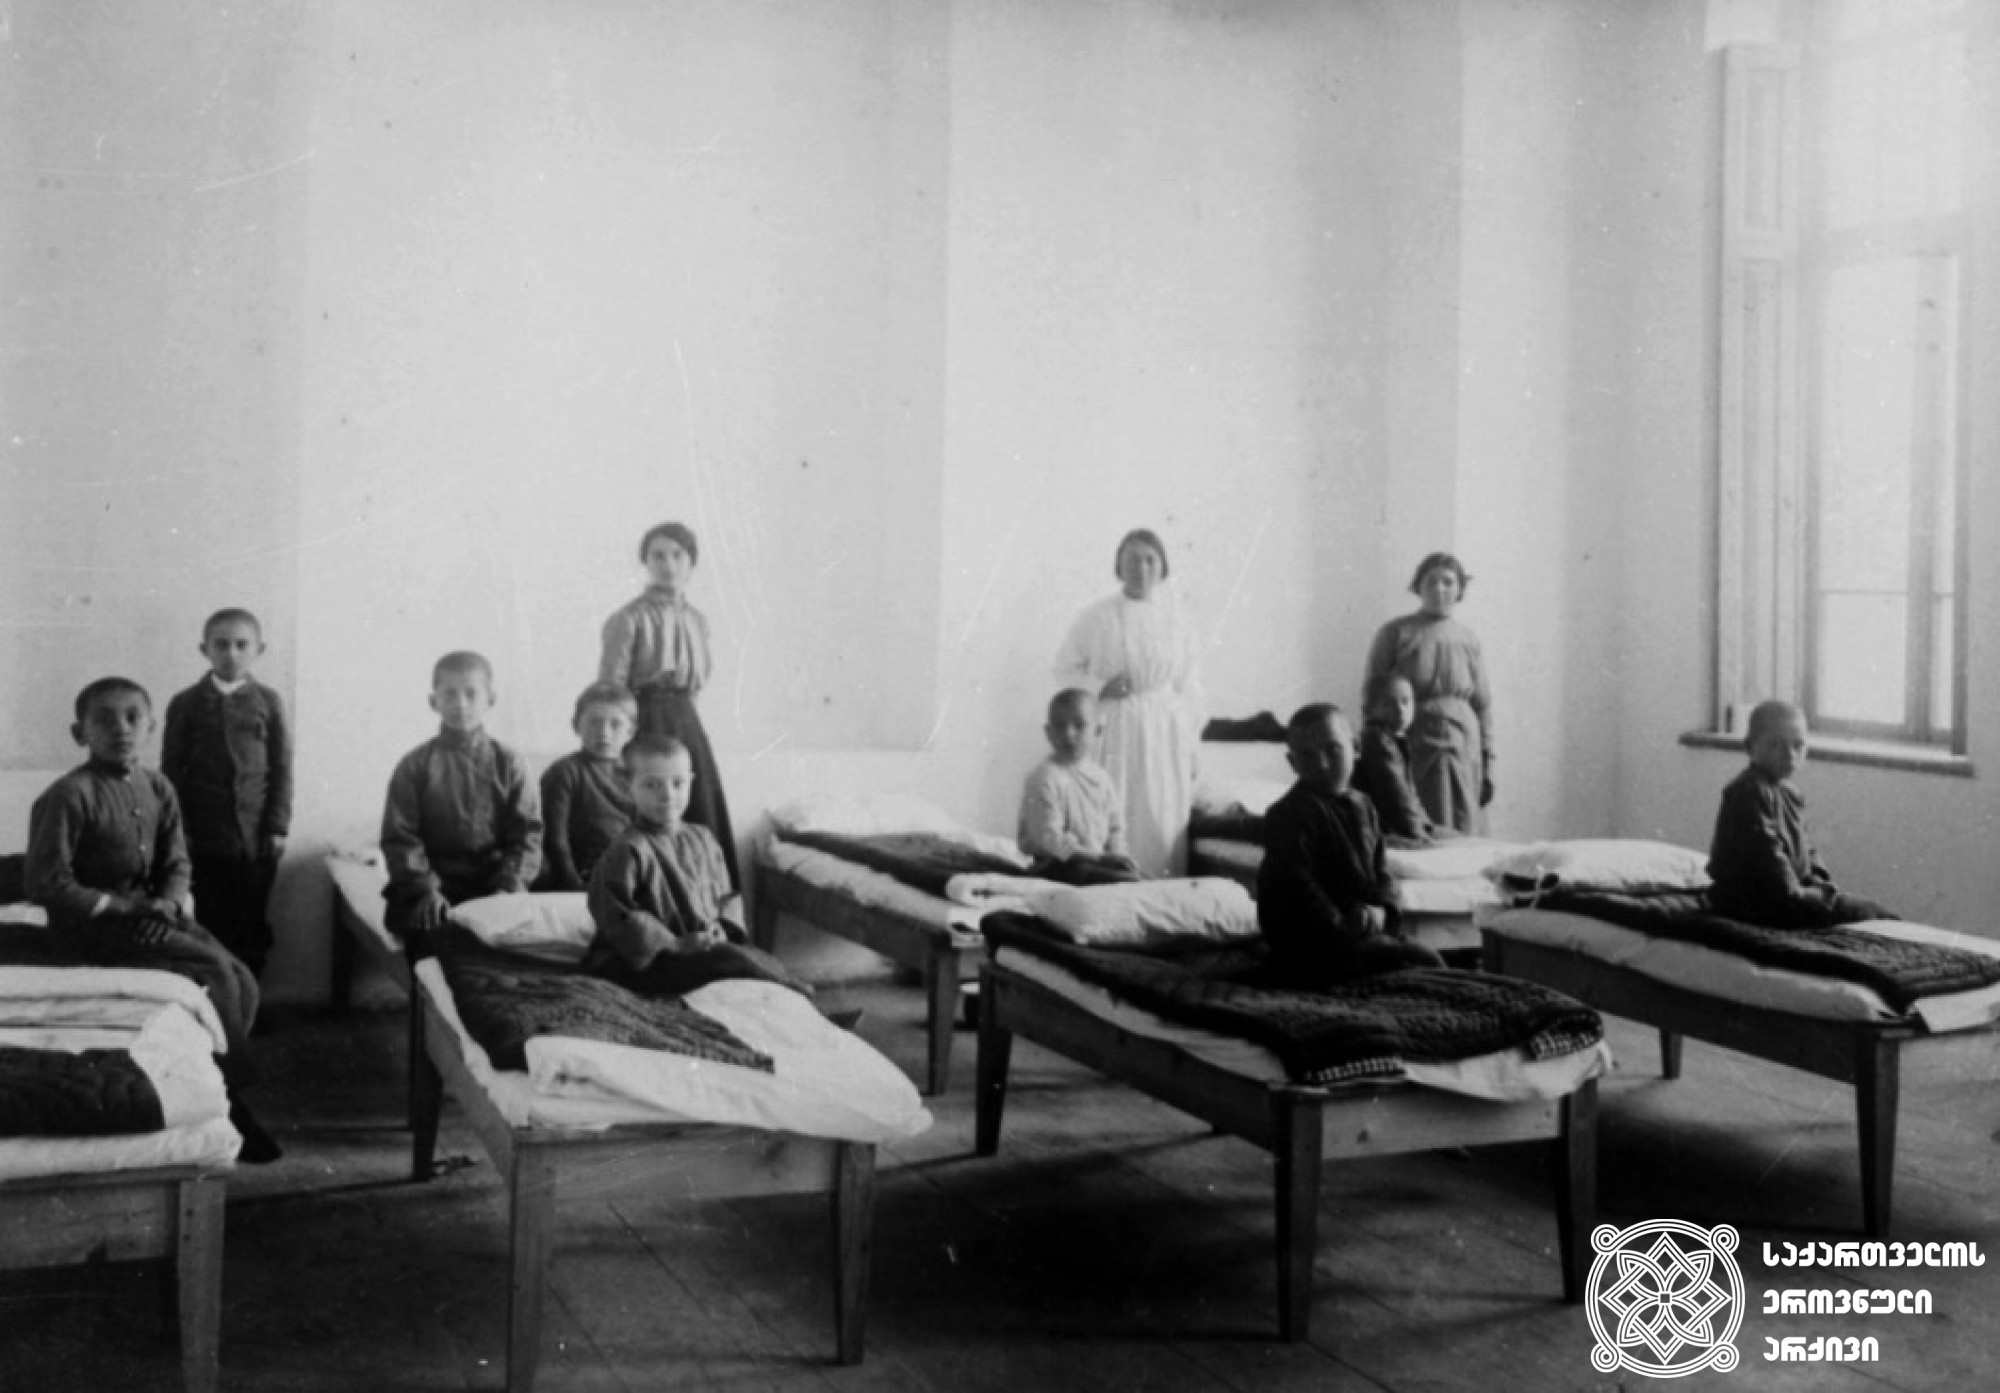 სოხუმის  სასწავლებელთან  არსებული  თავშესაფარი; სკოლის გამგე, მომვლელები და ბავშვები <br>
1916  წელი <br>
The shelter near the Sokhumi school: the school administrator, caretakers and children<br>
1916